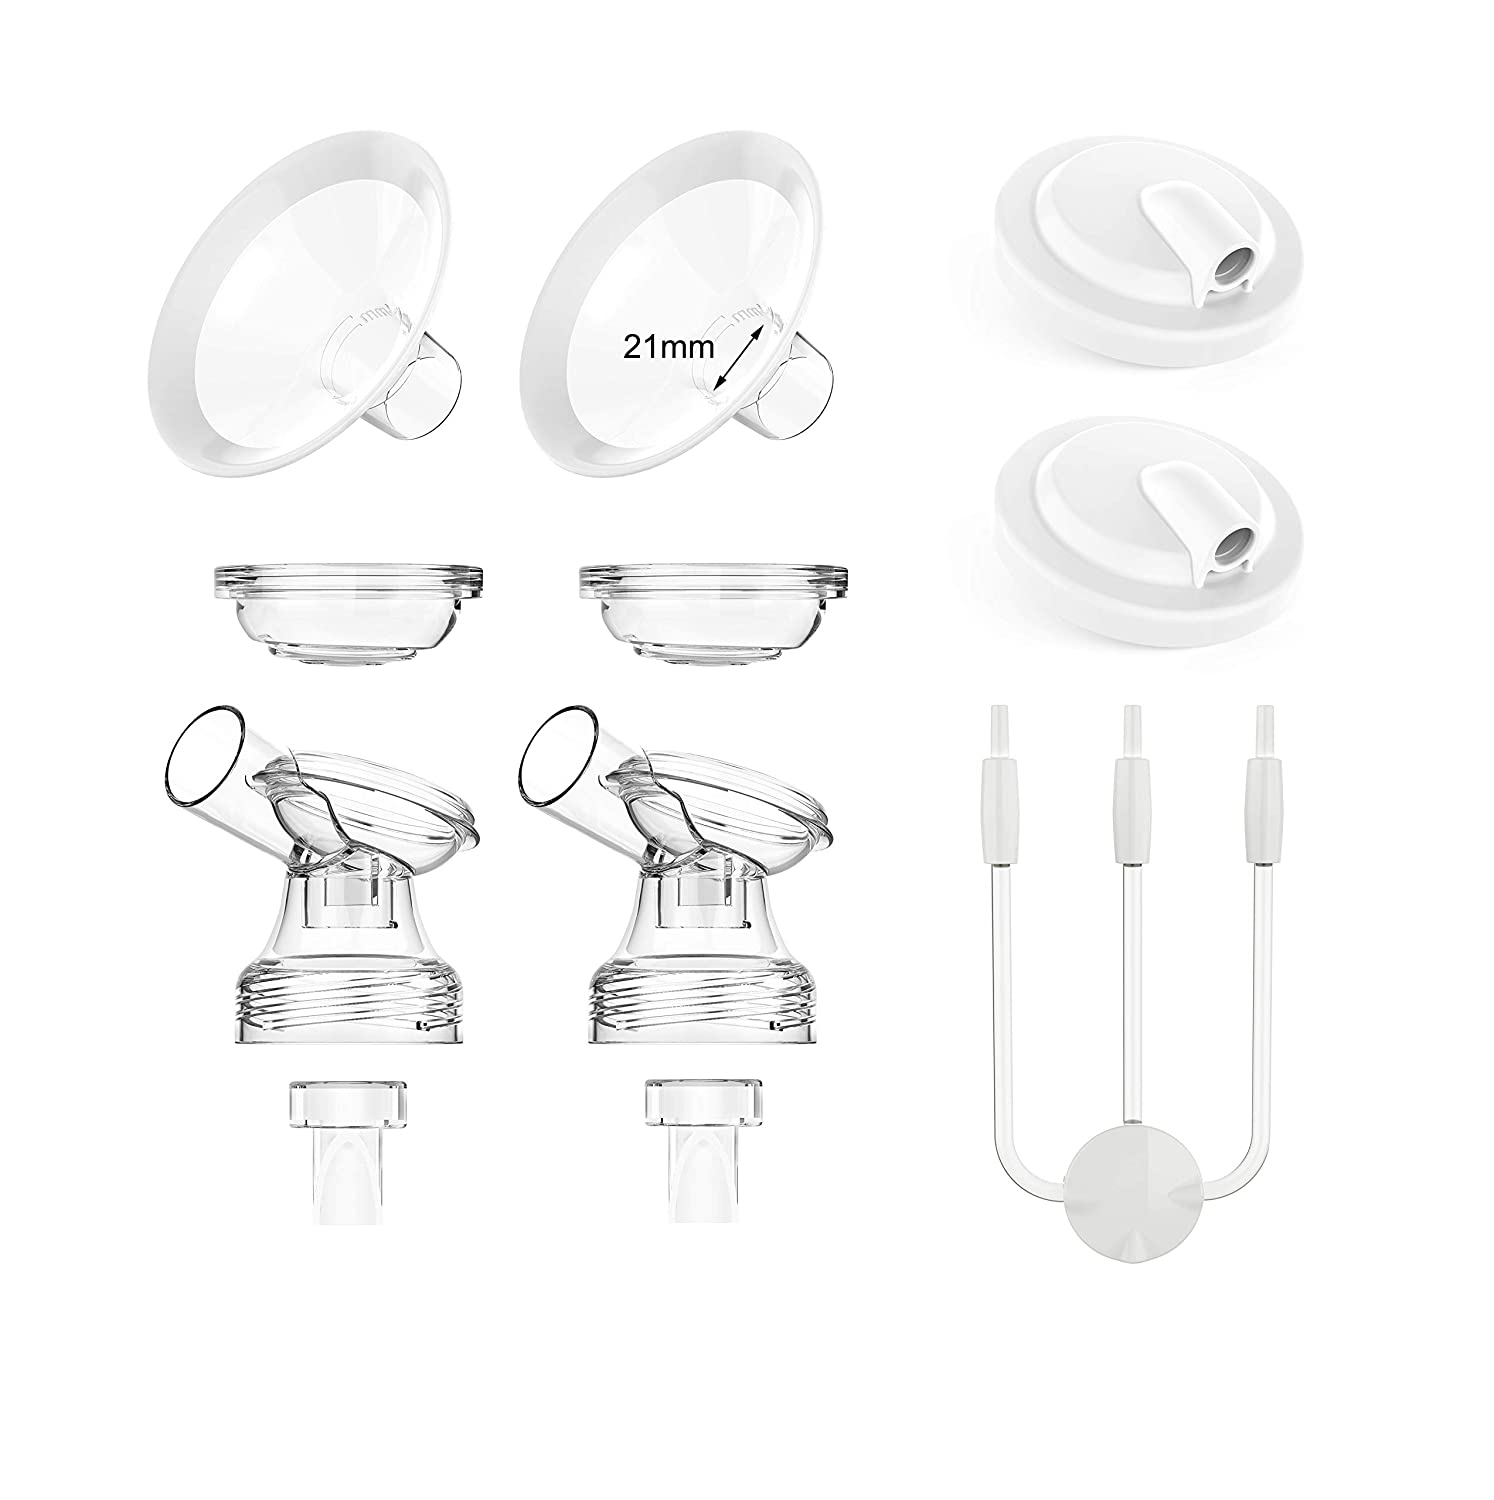 Replacement Parts | E Series Breast Pumps - E15, E19, E21 - 21mm